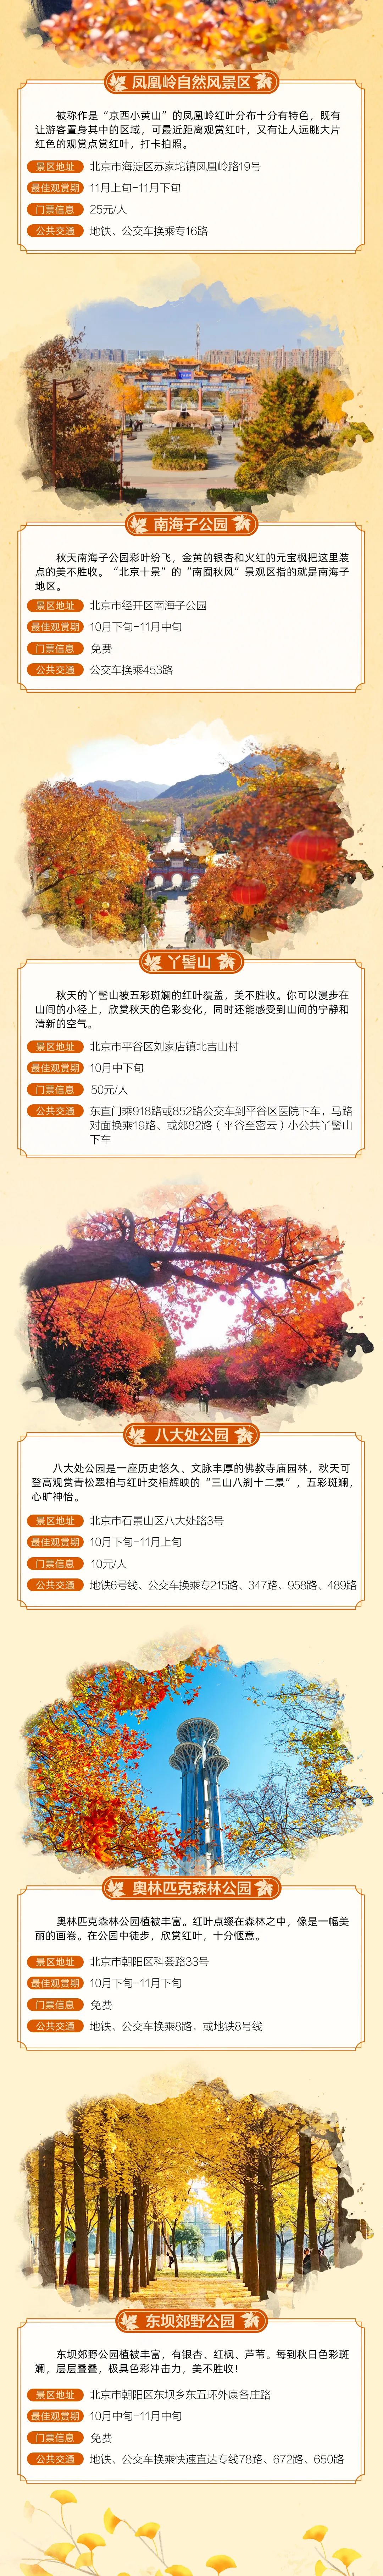 北京秋季赏叶地图